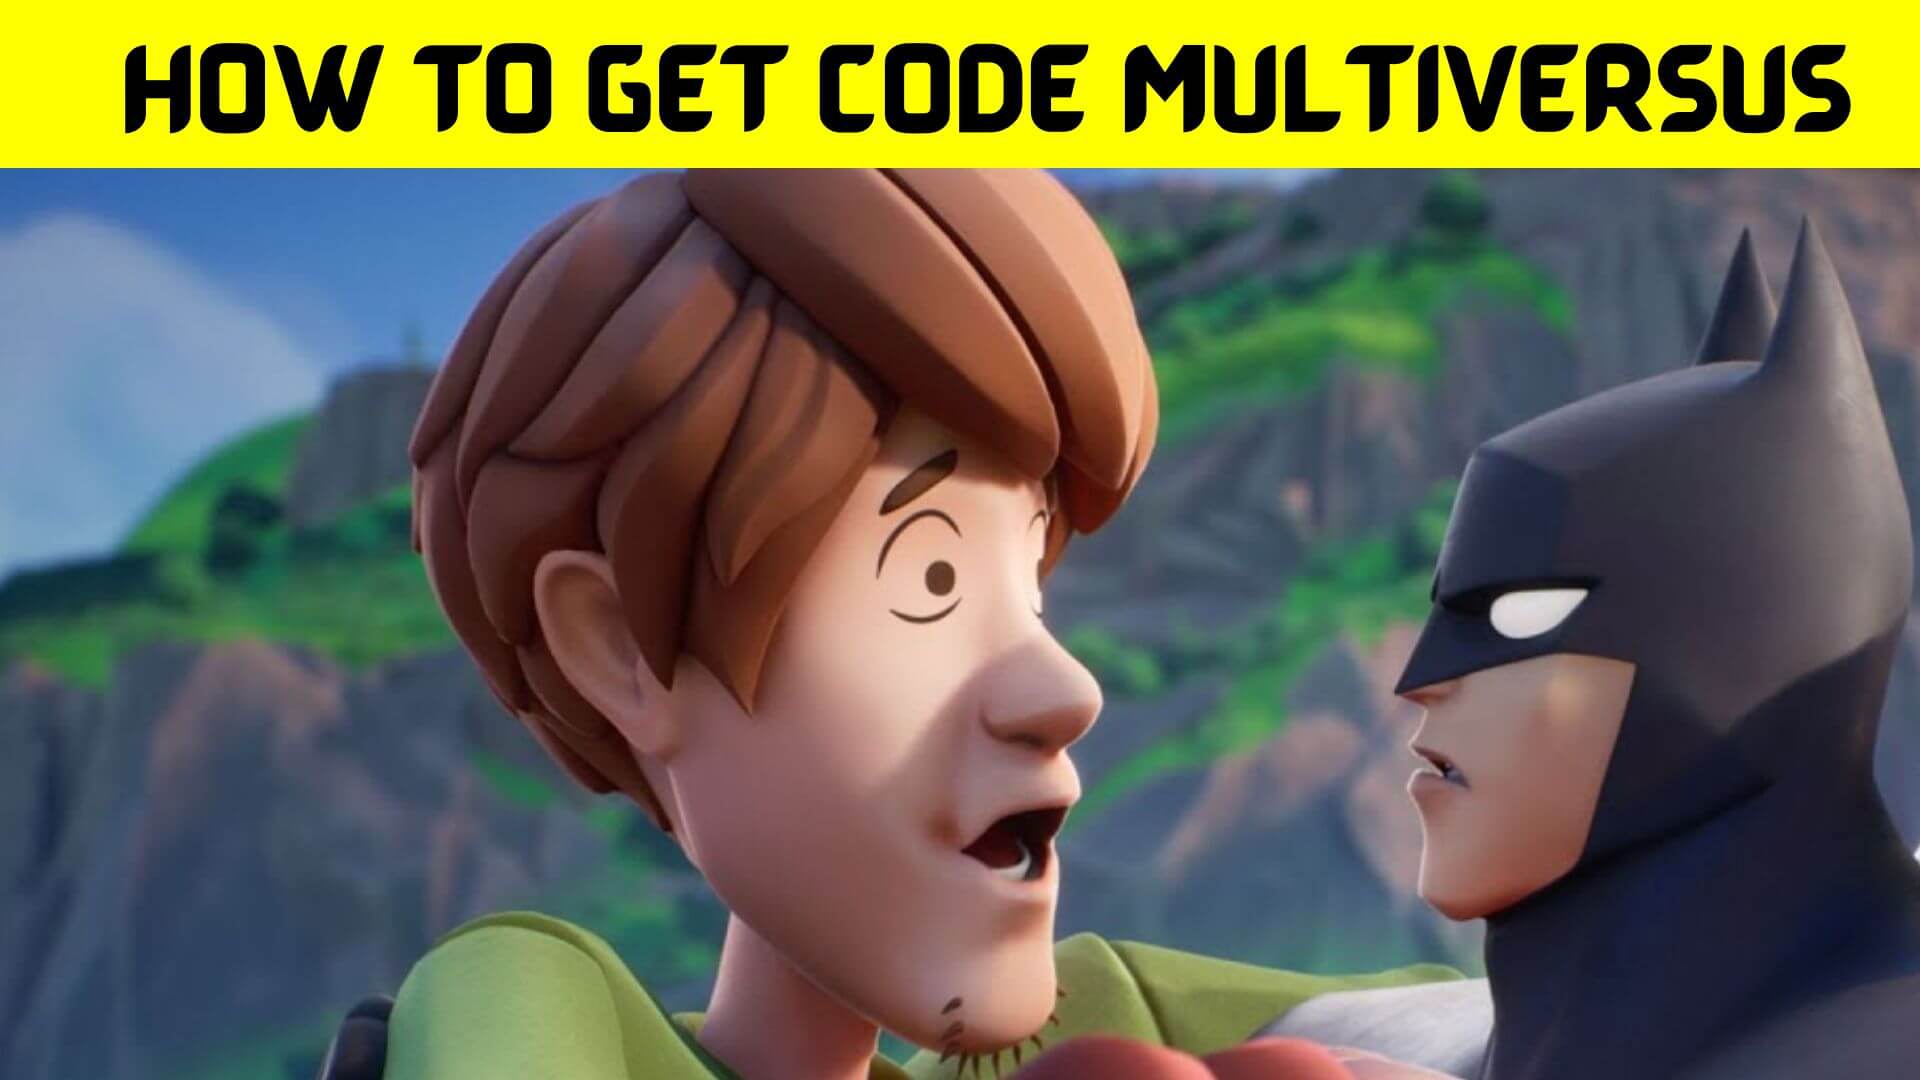 How to Get Code Multiversus